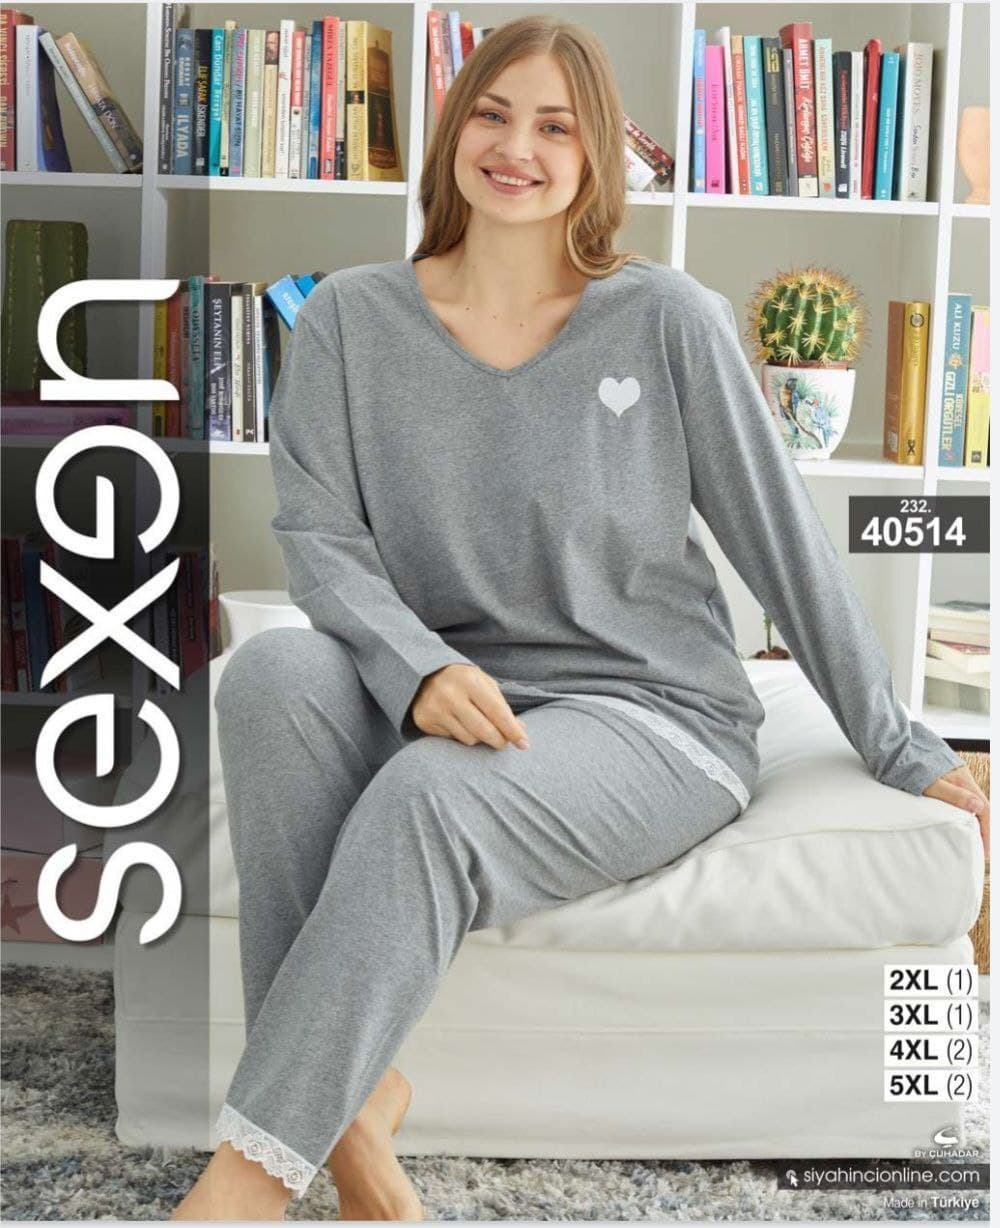 سکسن | Sexen - ست تیشرت آستین بلند و شلوار راحتی زنانه سایز بزرگ 40514 سکسن